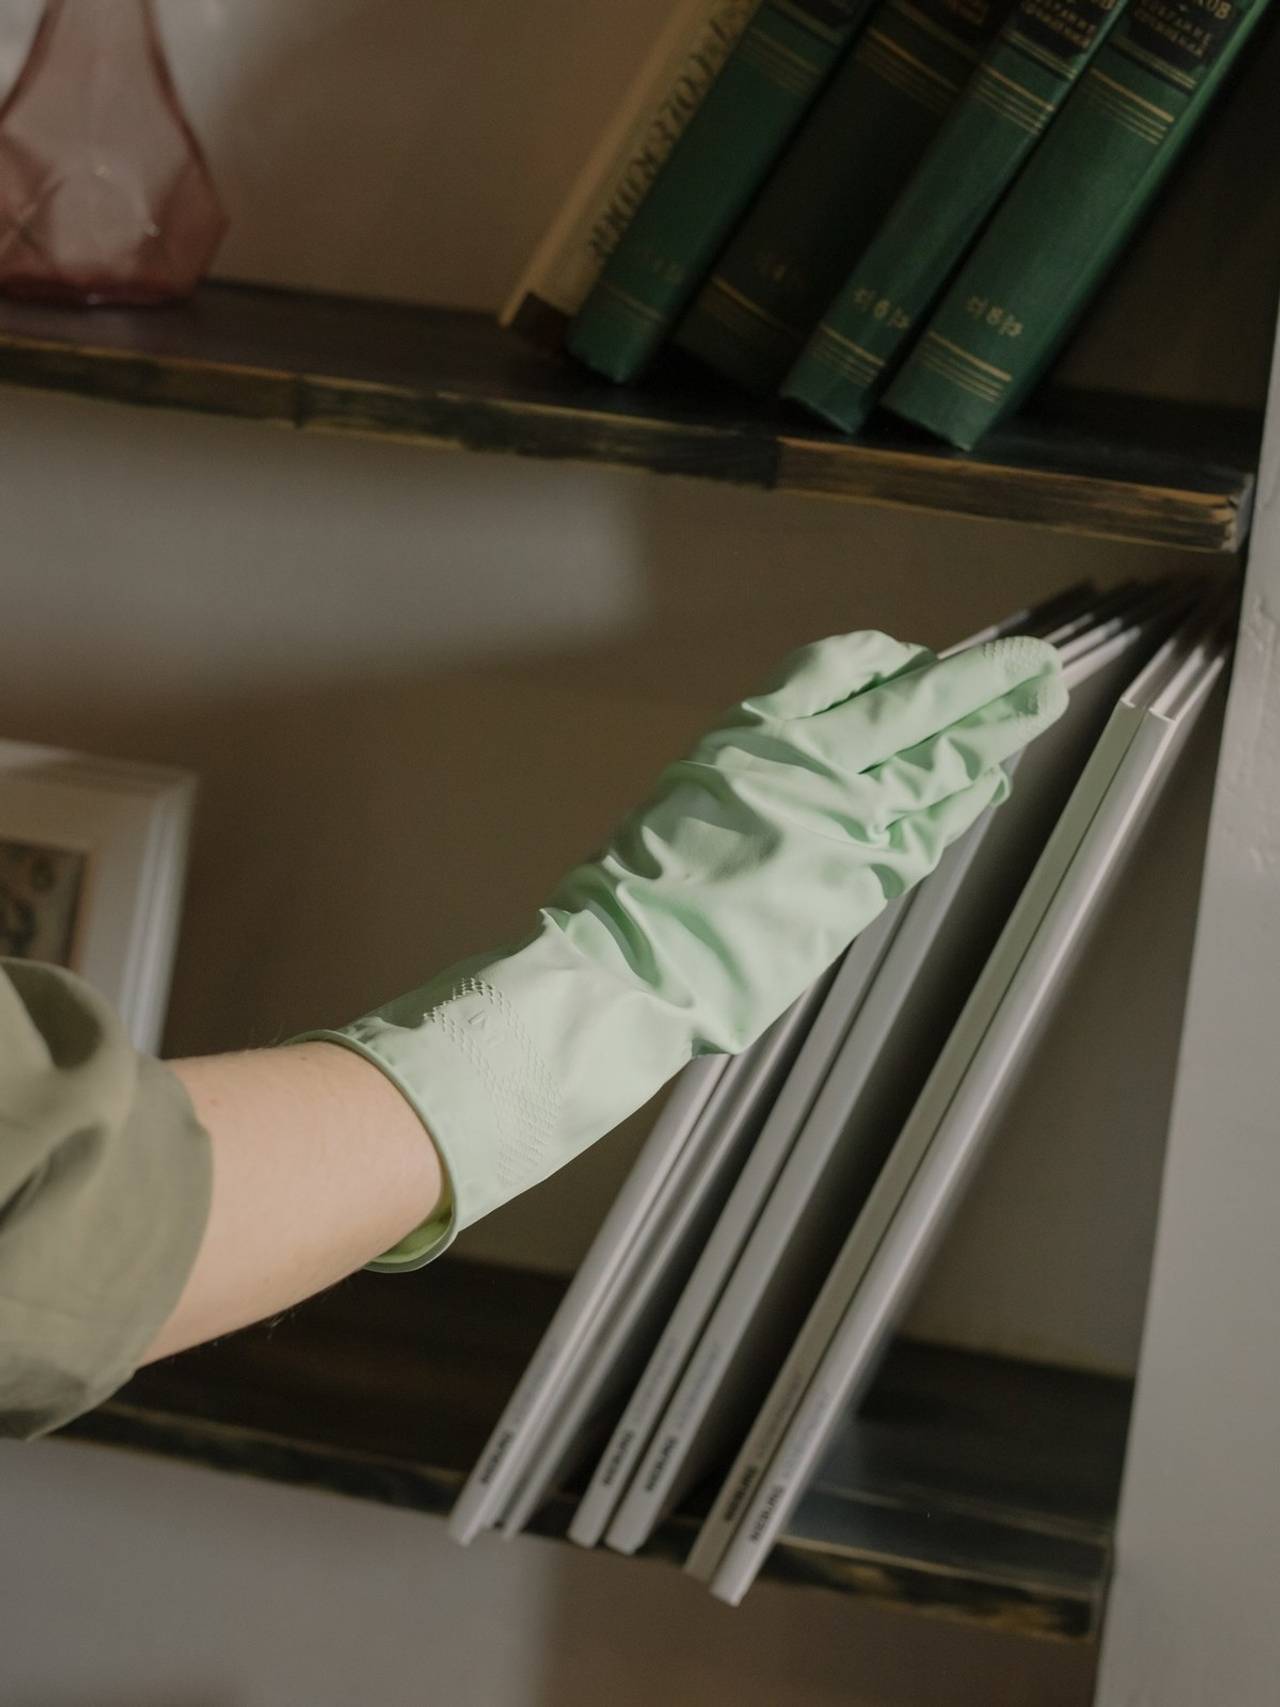 Mão com luva verde retirando alguns livros brancos e finos de uma prateleira. Na prateleira de cima alguns livros verdes.